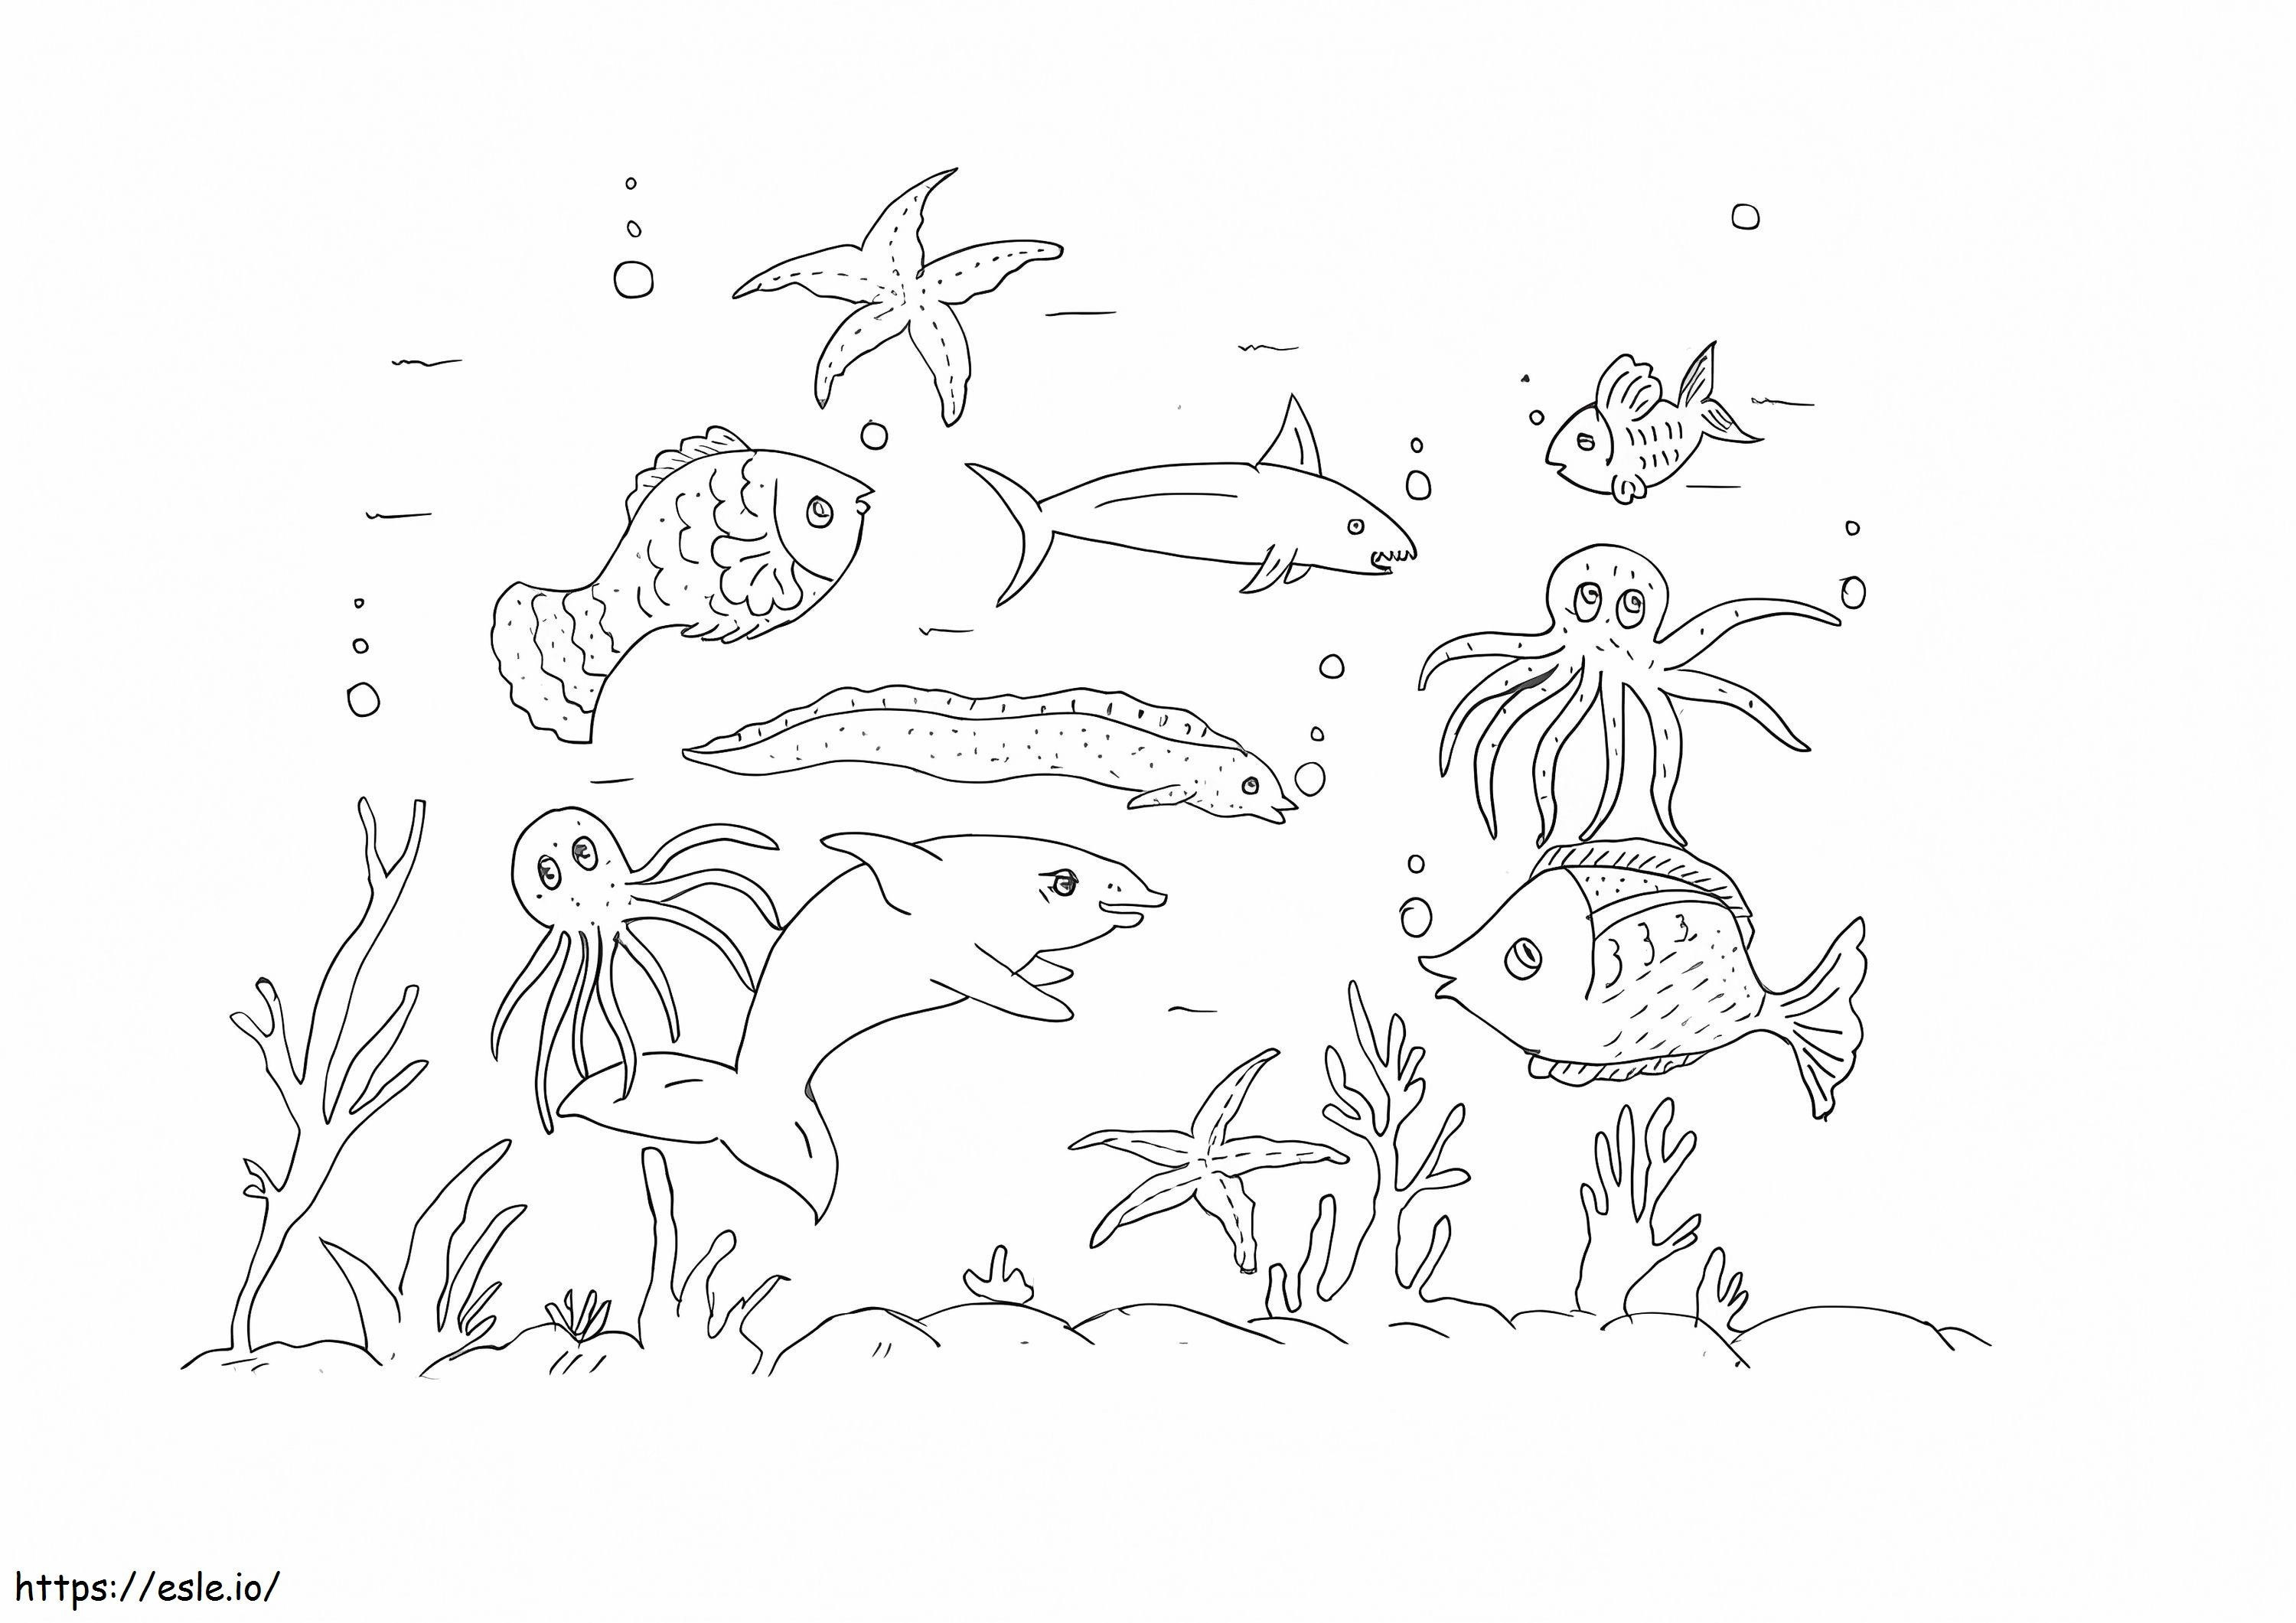 Ocean Animals coloring page